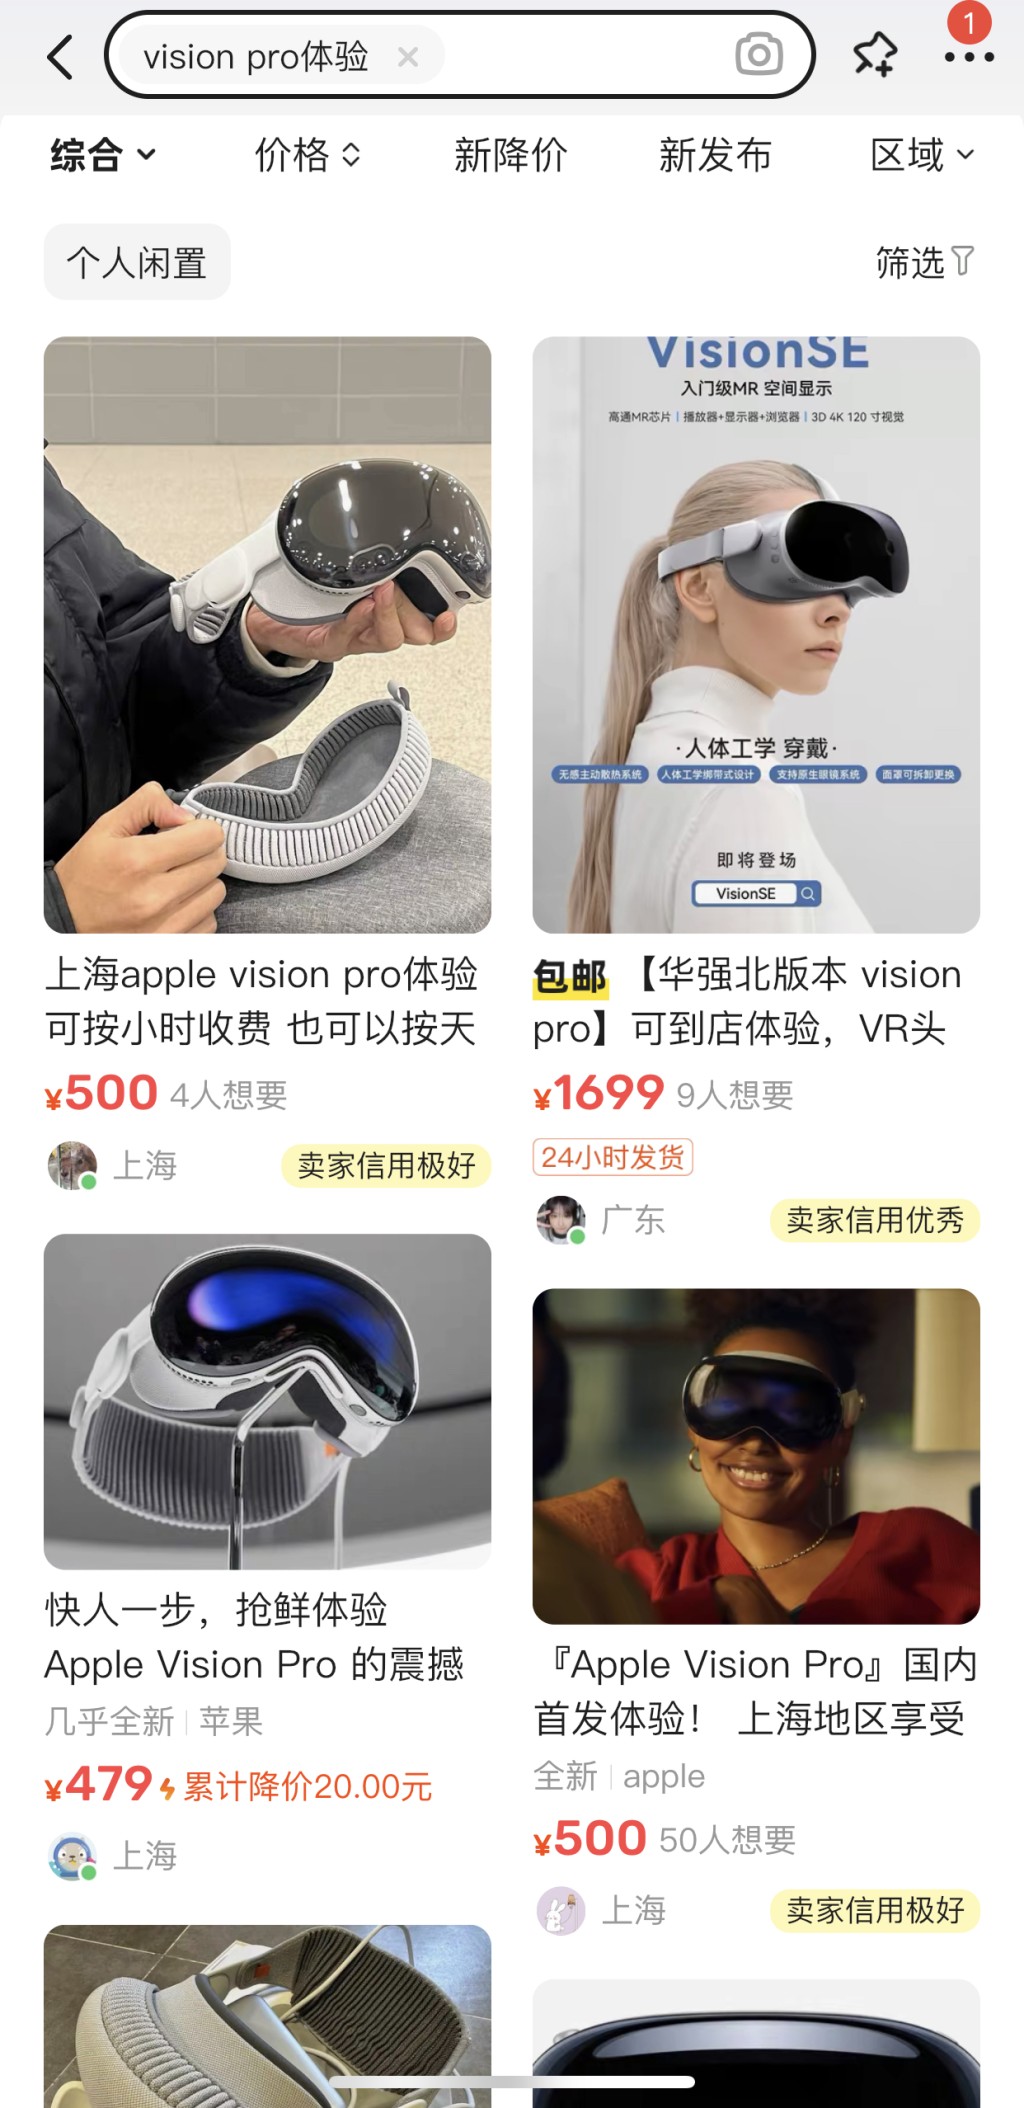 另外，在閑魚上，北京、上海、深圳和杭州等部分城市已出現Vision Pro線下體驗招募的帖子。